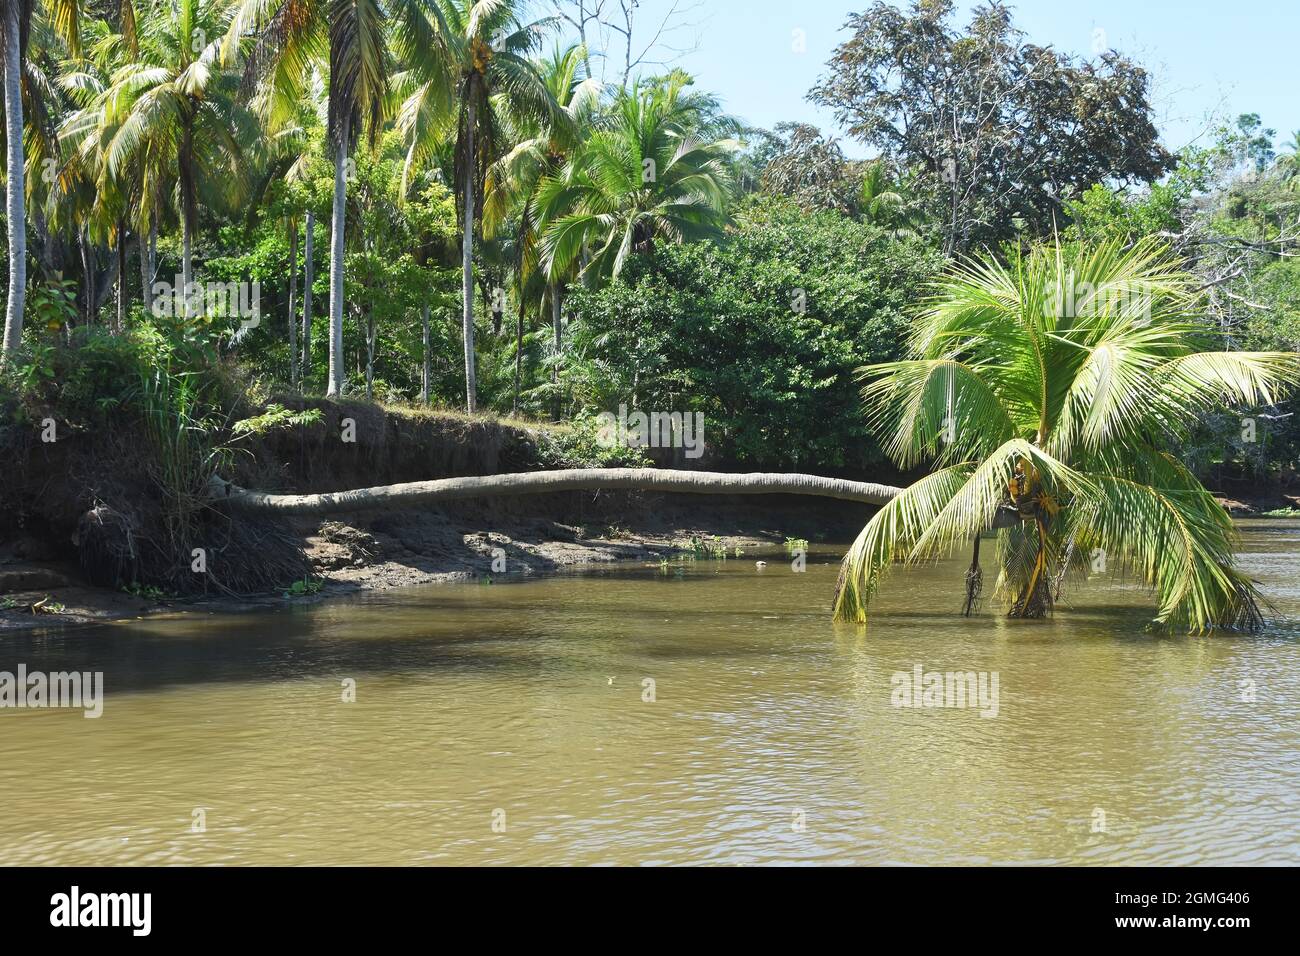 Palmera sobre el río, Costa Rica Foto de stock